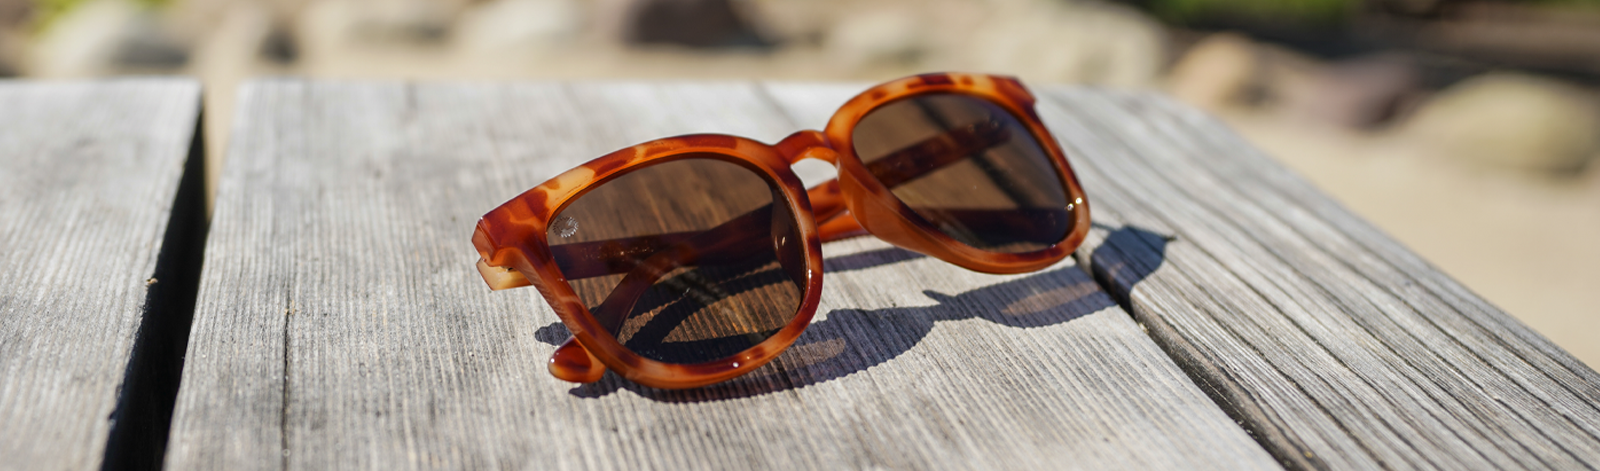 Kithdia sunglasses Polarized Lens Tester card ad advertising | eBay